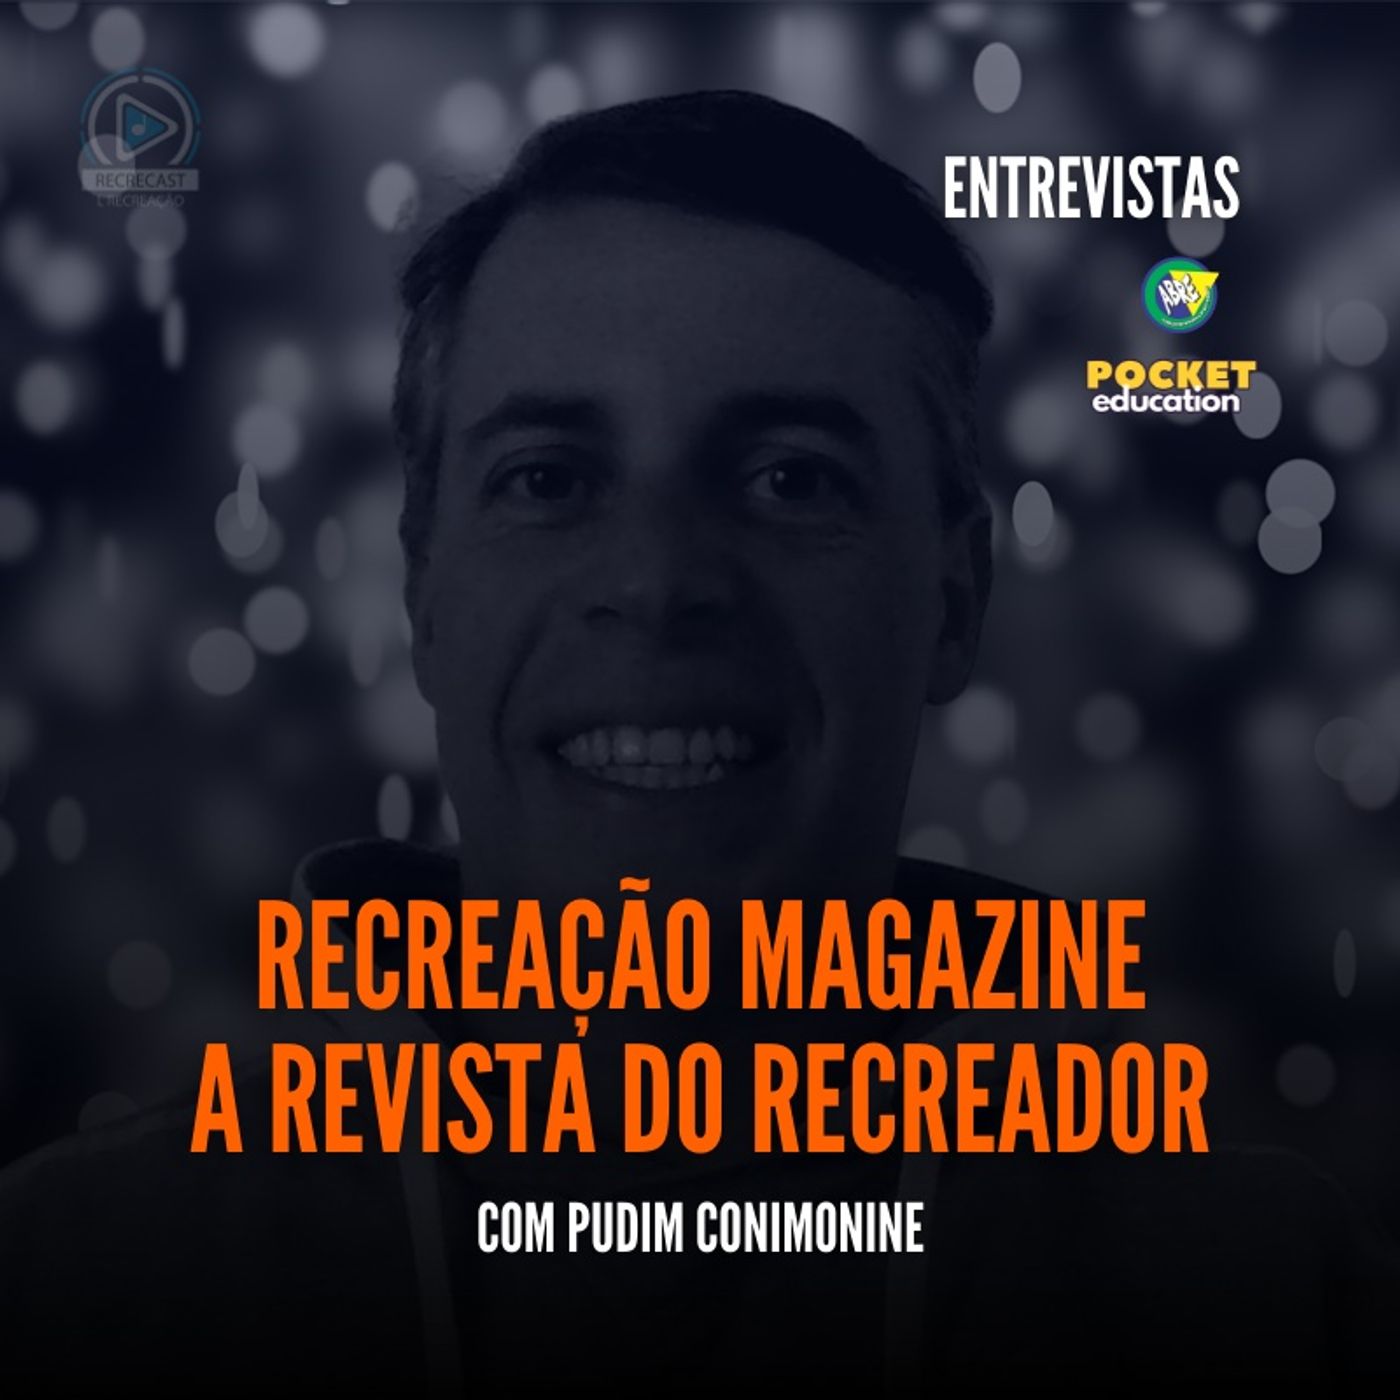 Recreação Magazine - A Revista do Recreador